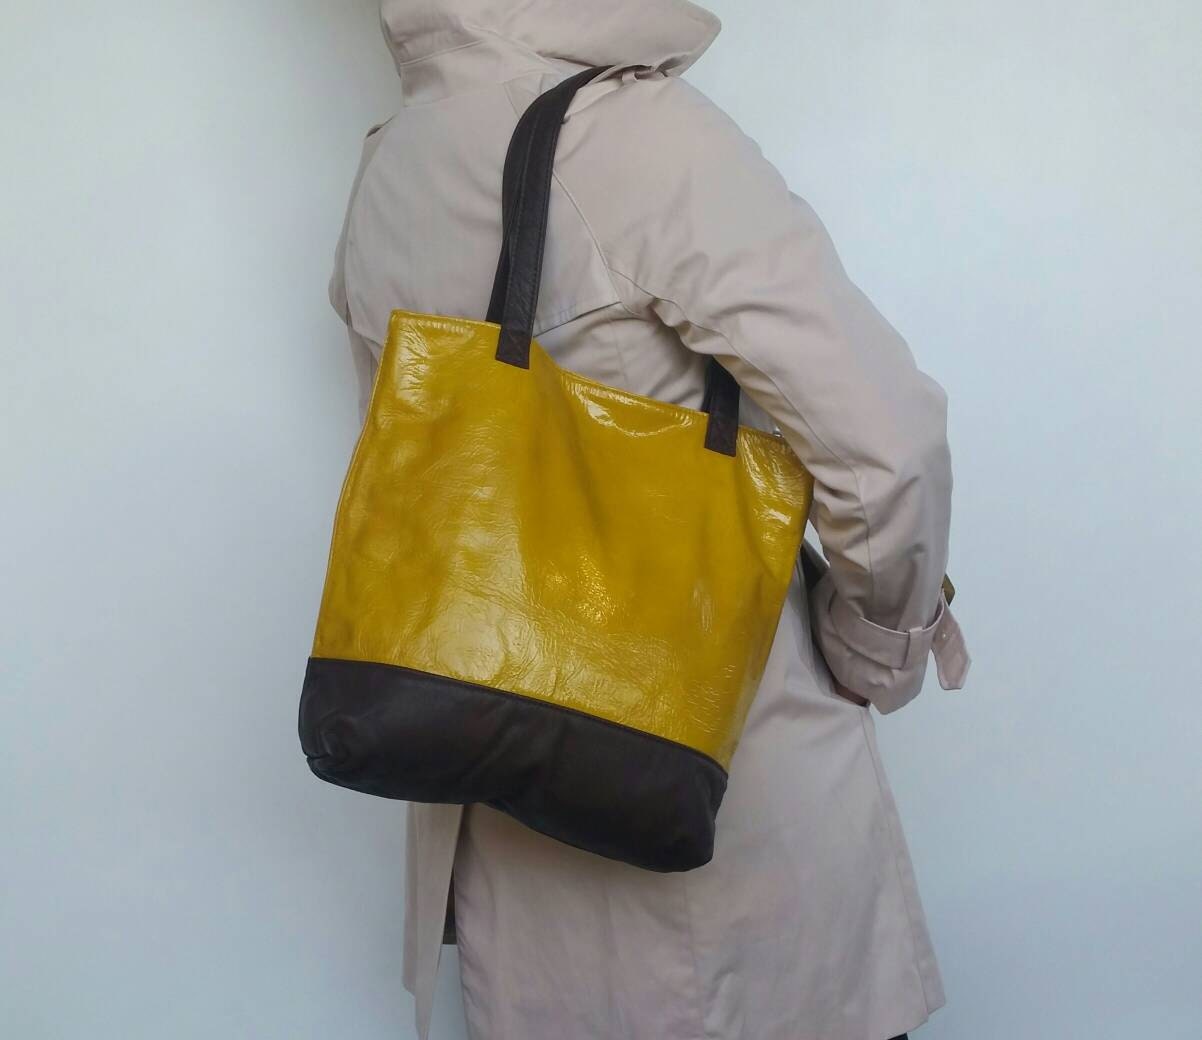 Leather Bag Woman Leather Handbag Tote Bag Colorful Yellow | Etsy